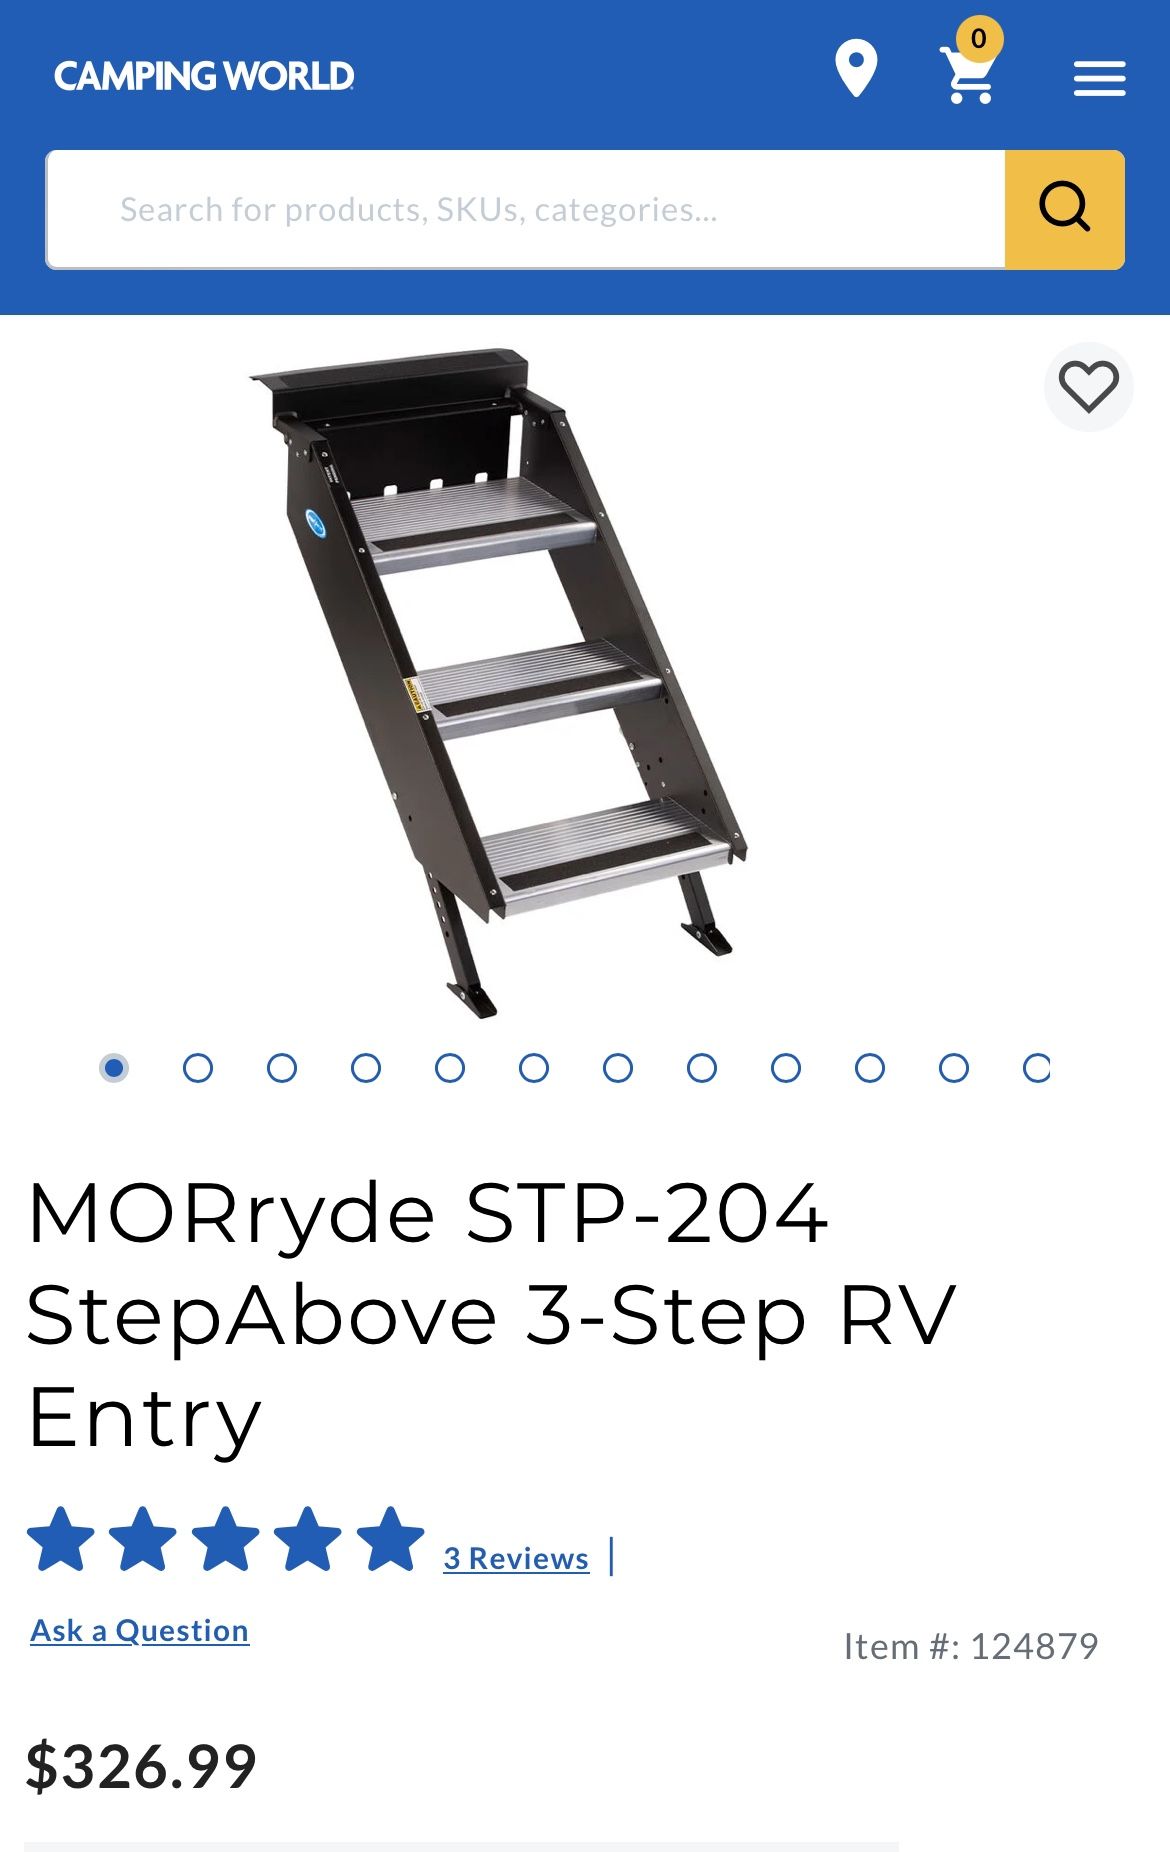 StepAbove 3-Step RV Entry